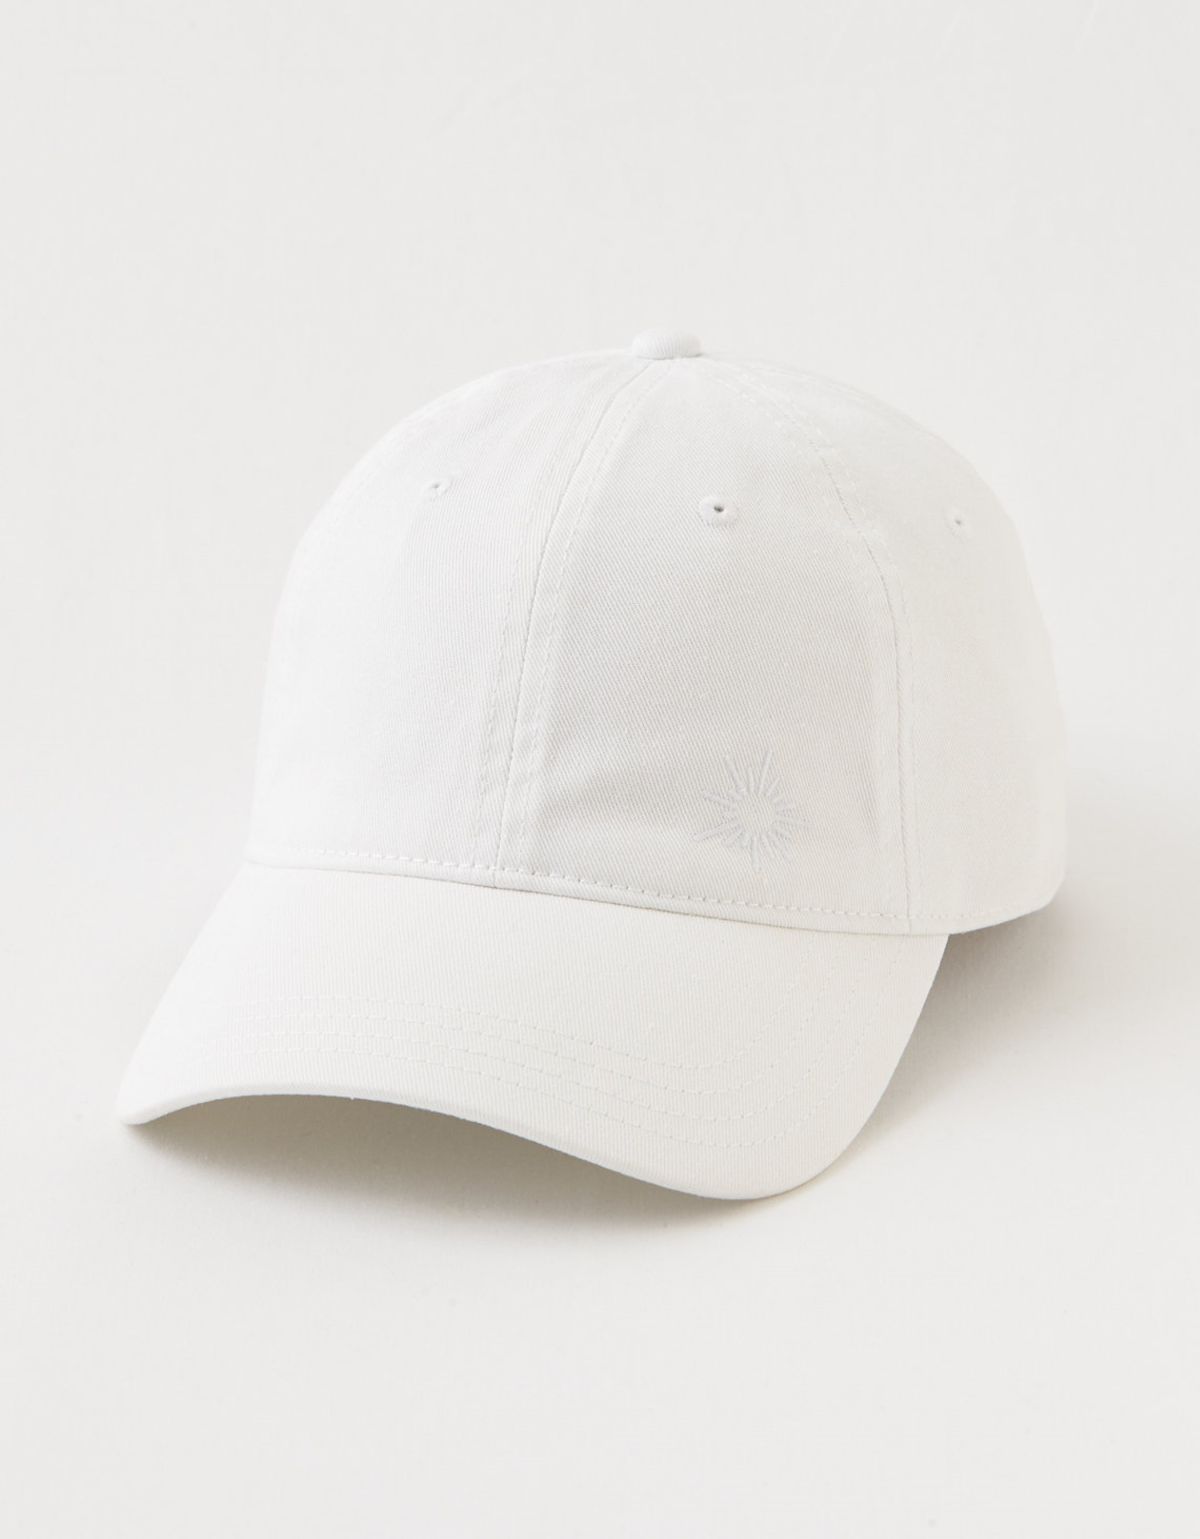  כובע מצחייה עם לוגו / נשים של AERIE